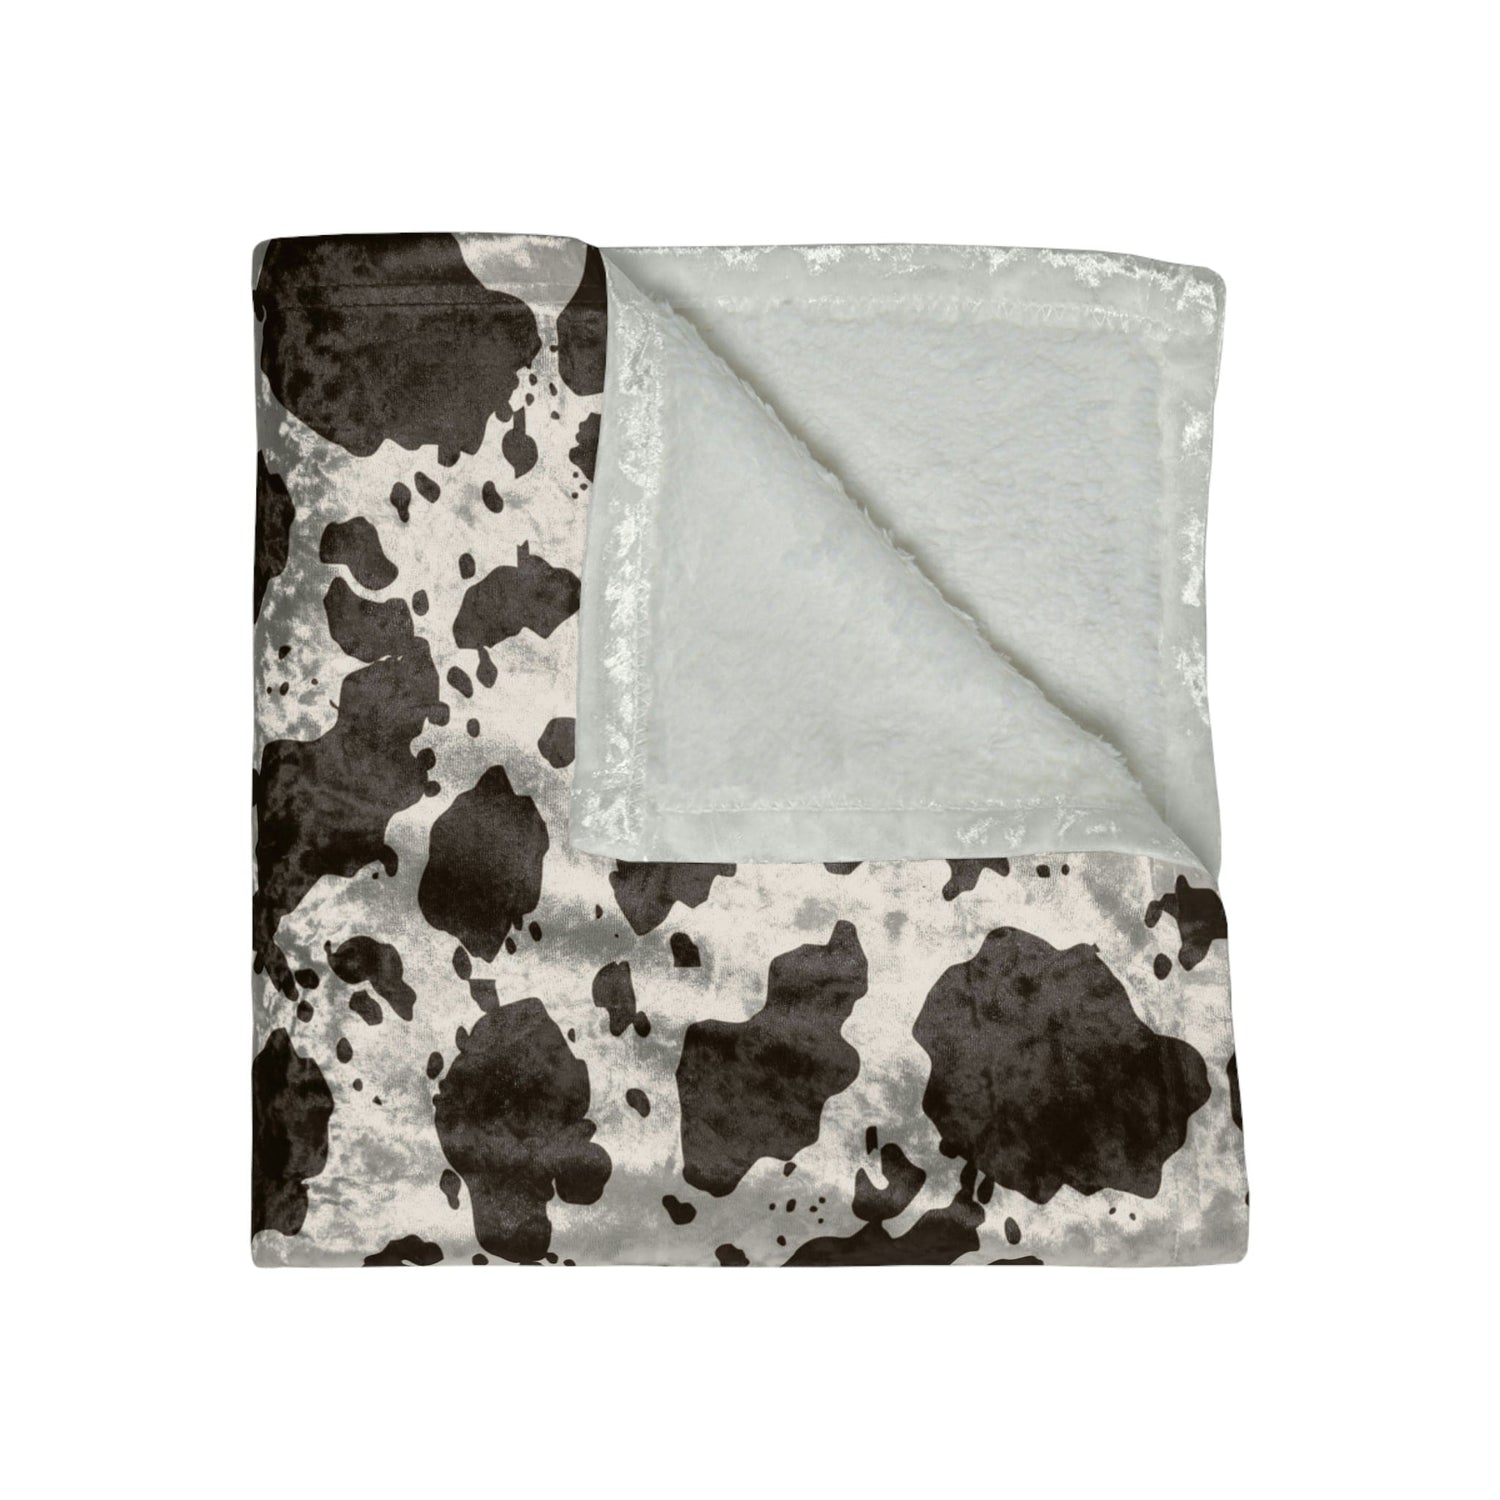 Kate McEnroe New York Cow Print Country Western Crushed Velvet BlanketBlankets32337429355127507128